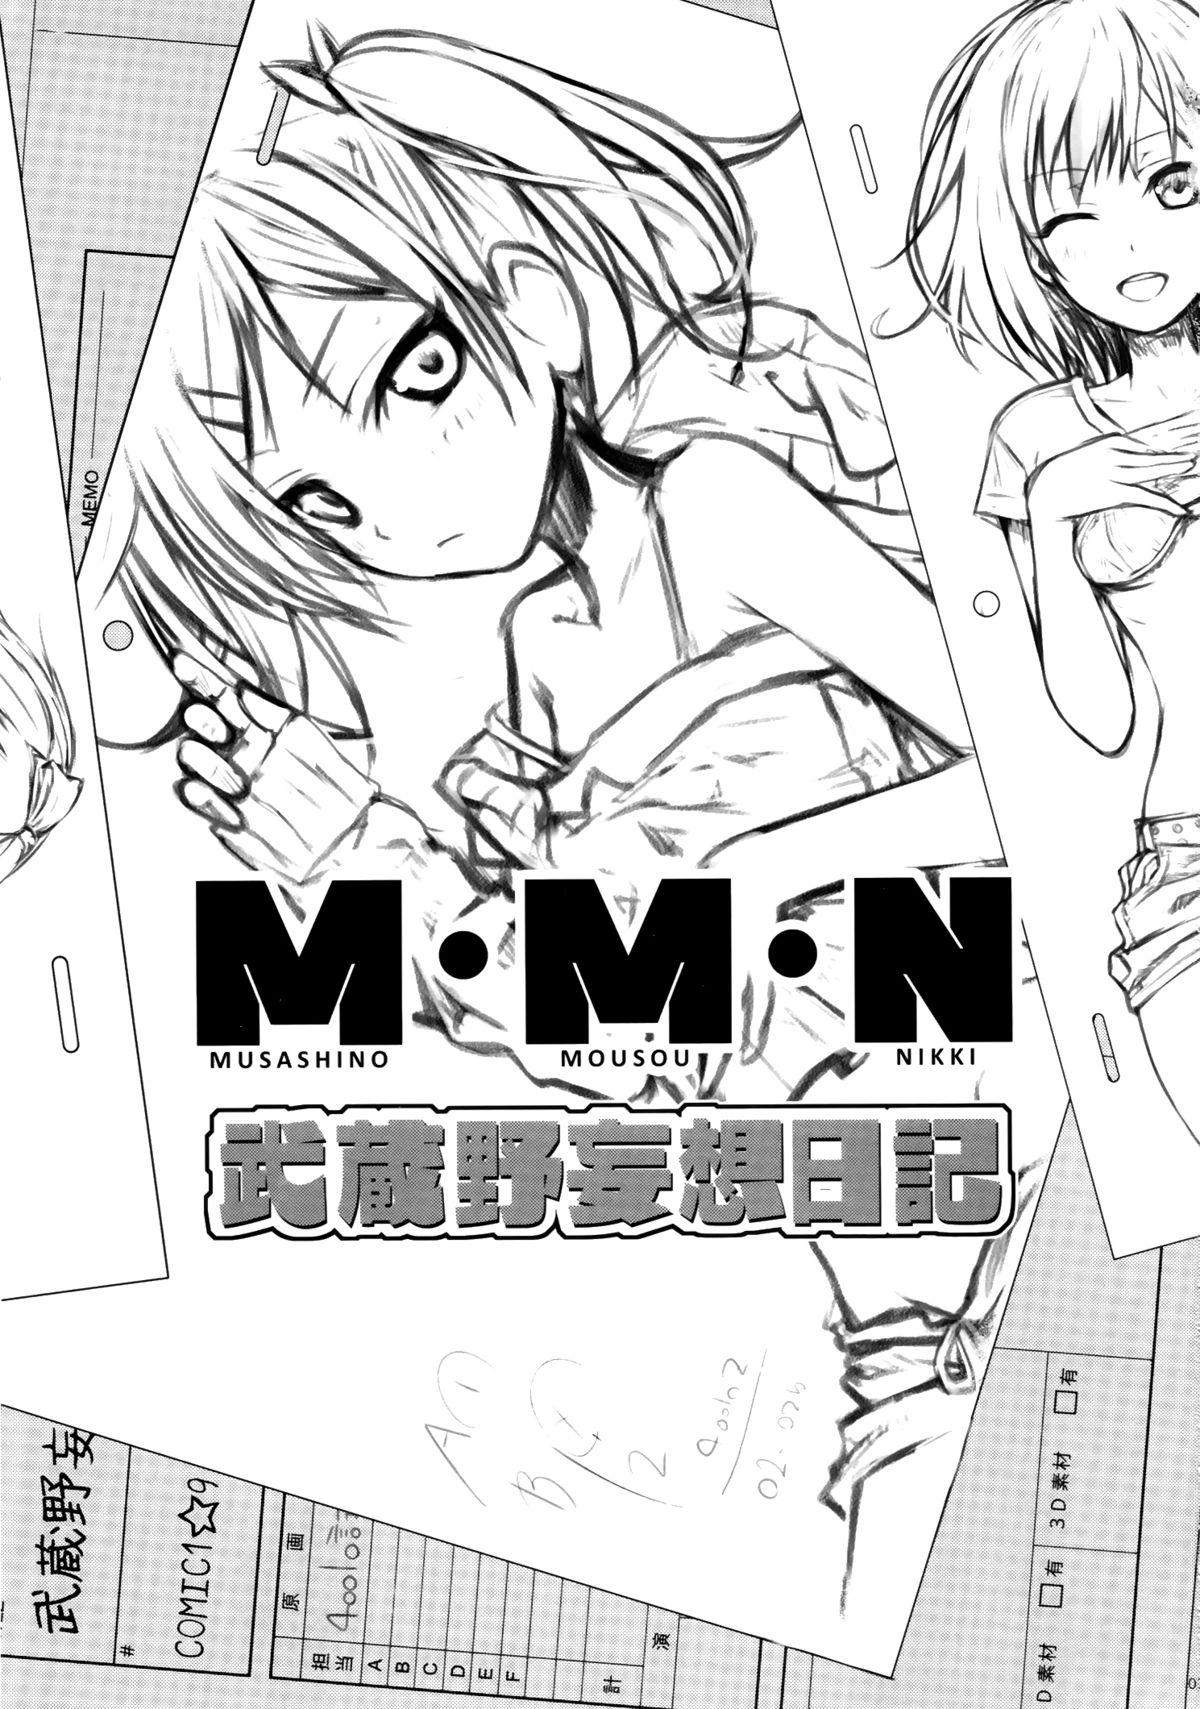 Consolo Musashino Mousou Nikki - Shirobako Wam - Page 3